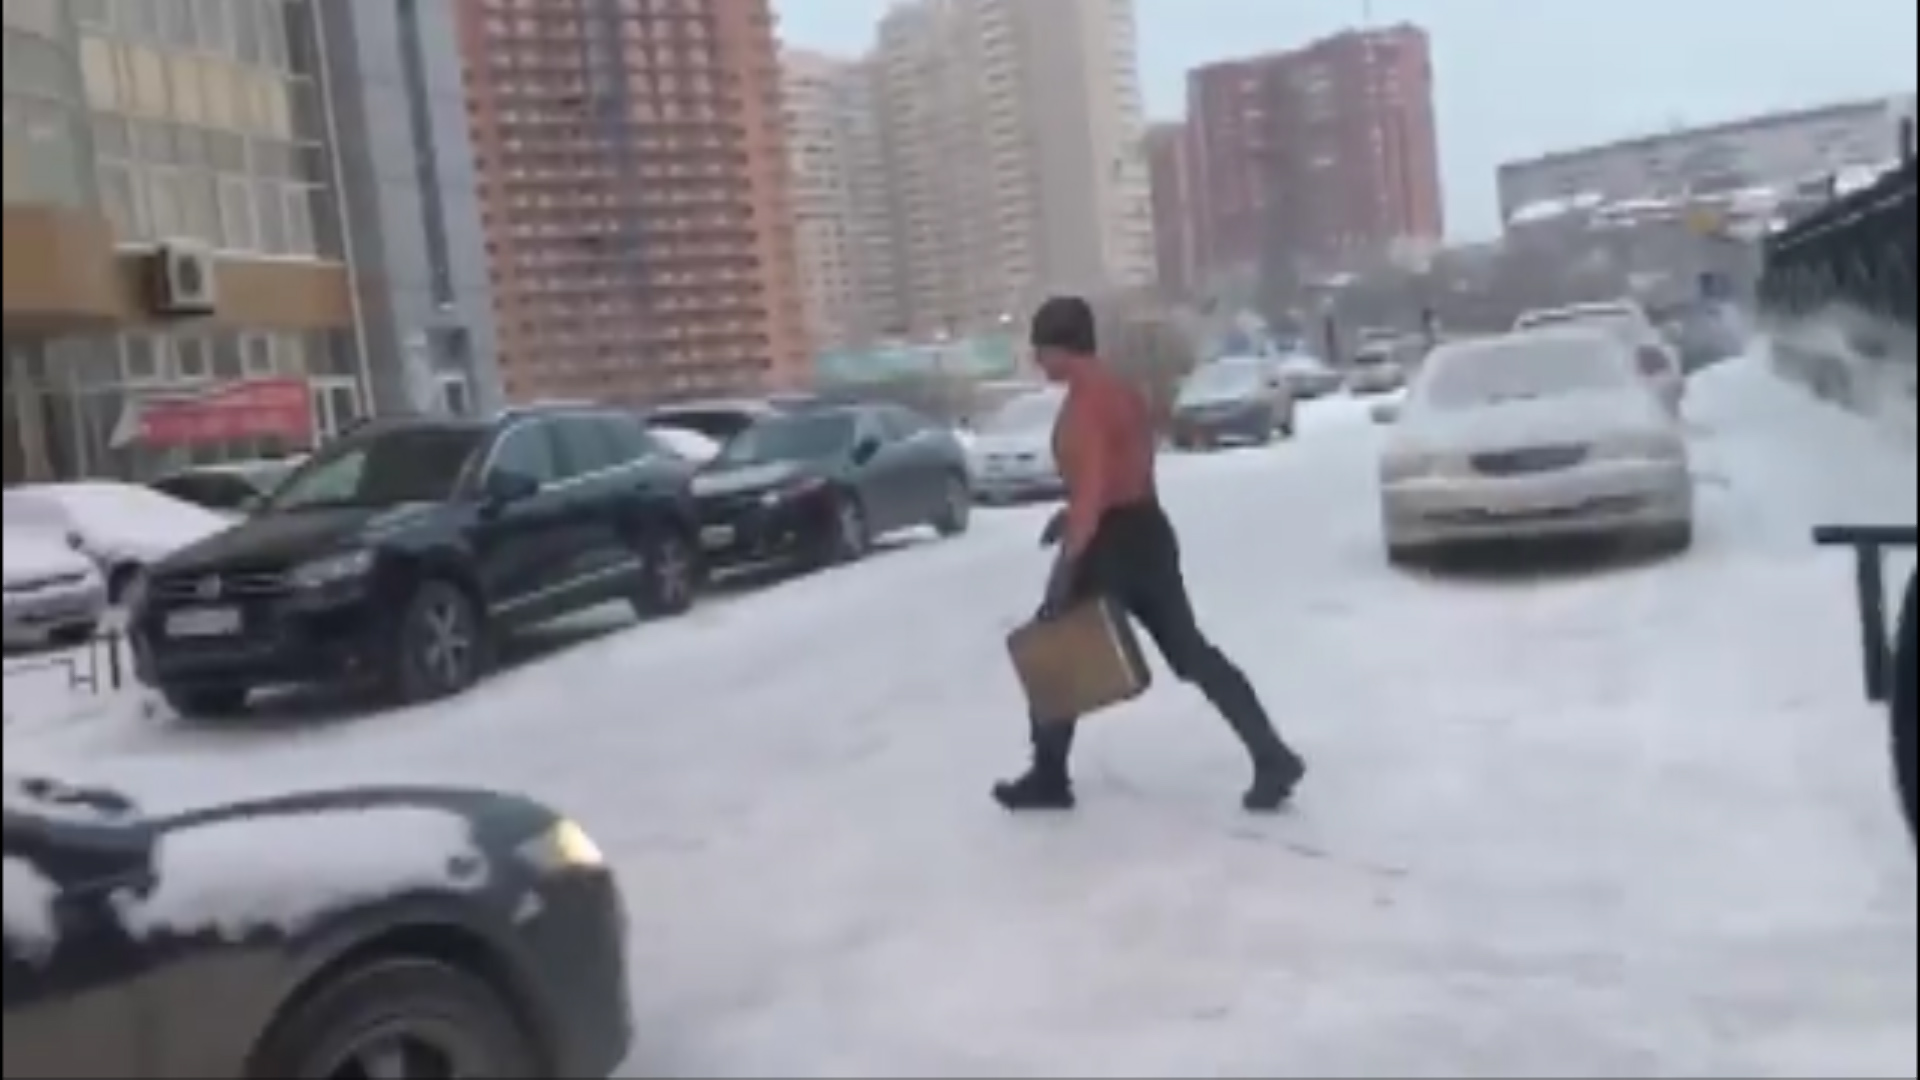 Спортивная малышка гуляет зимой по улице и раздевается